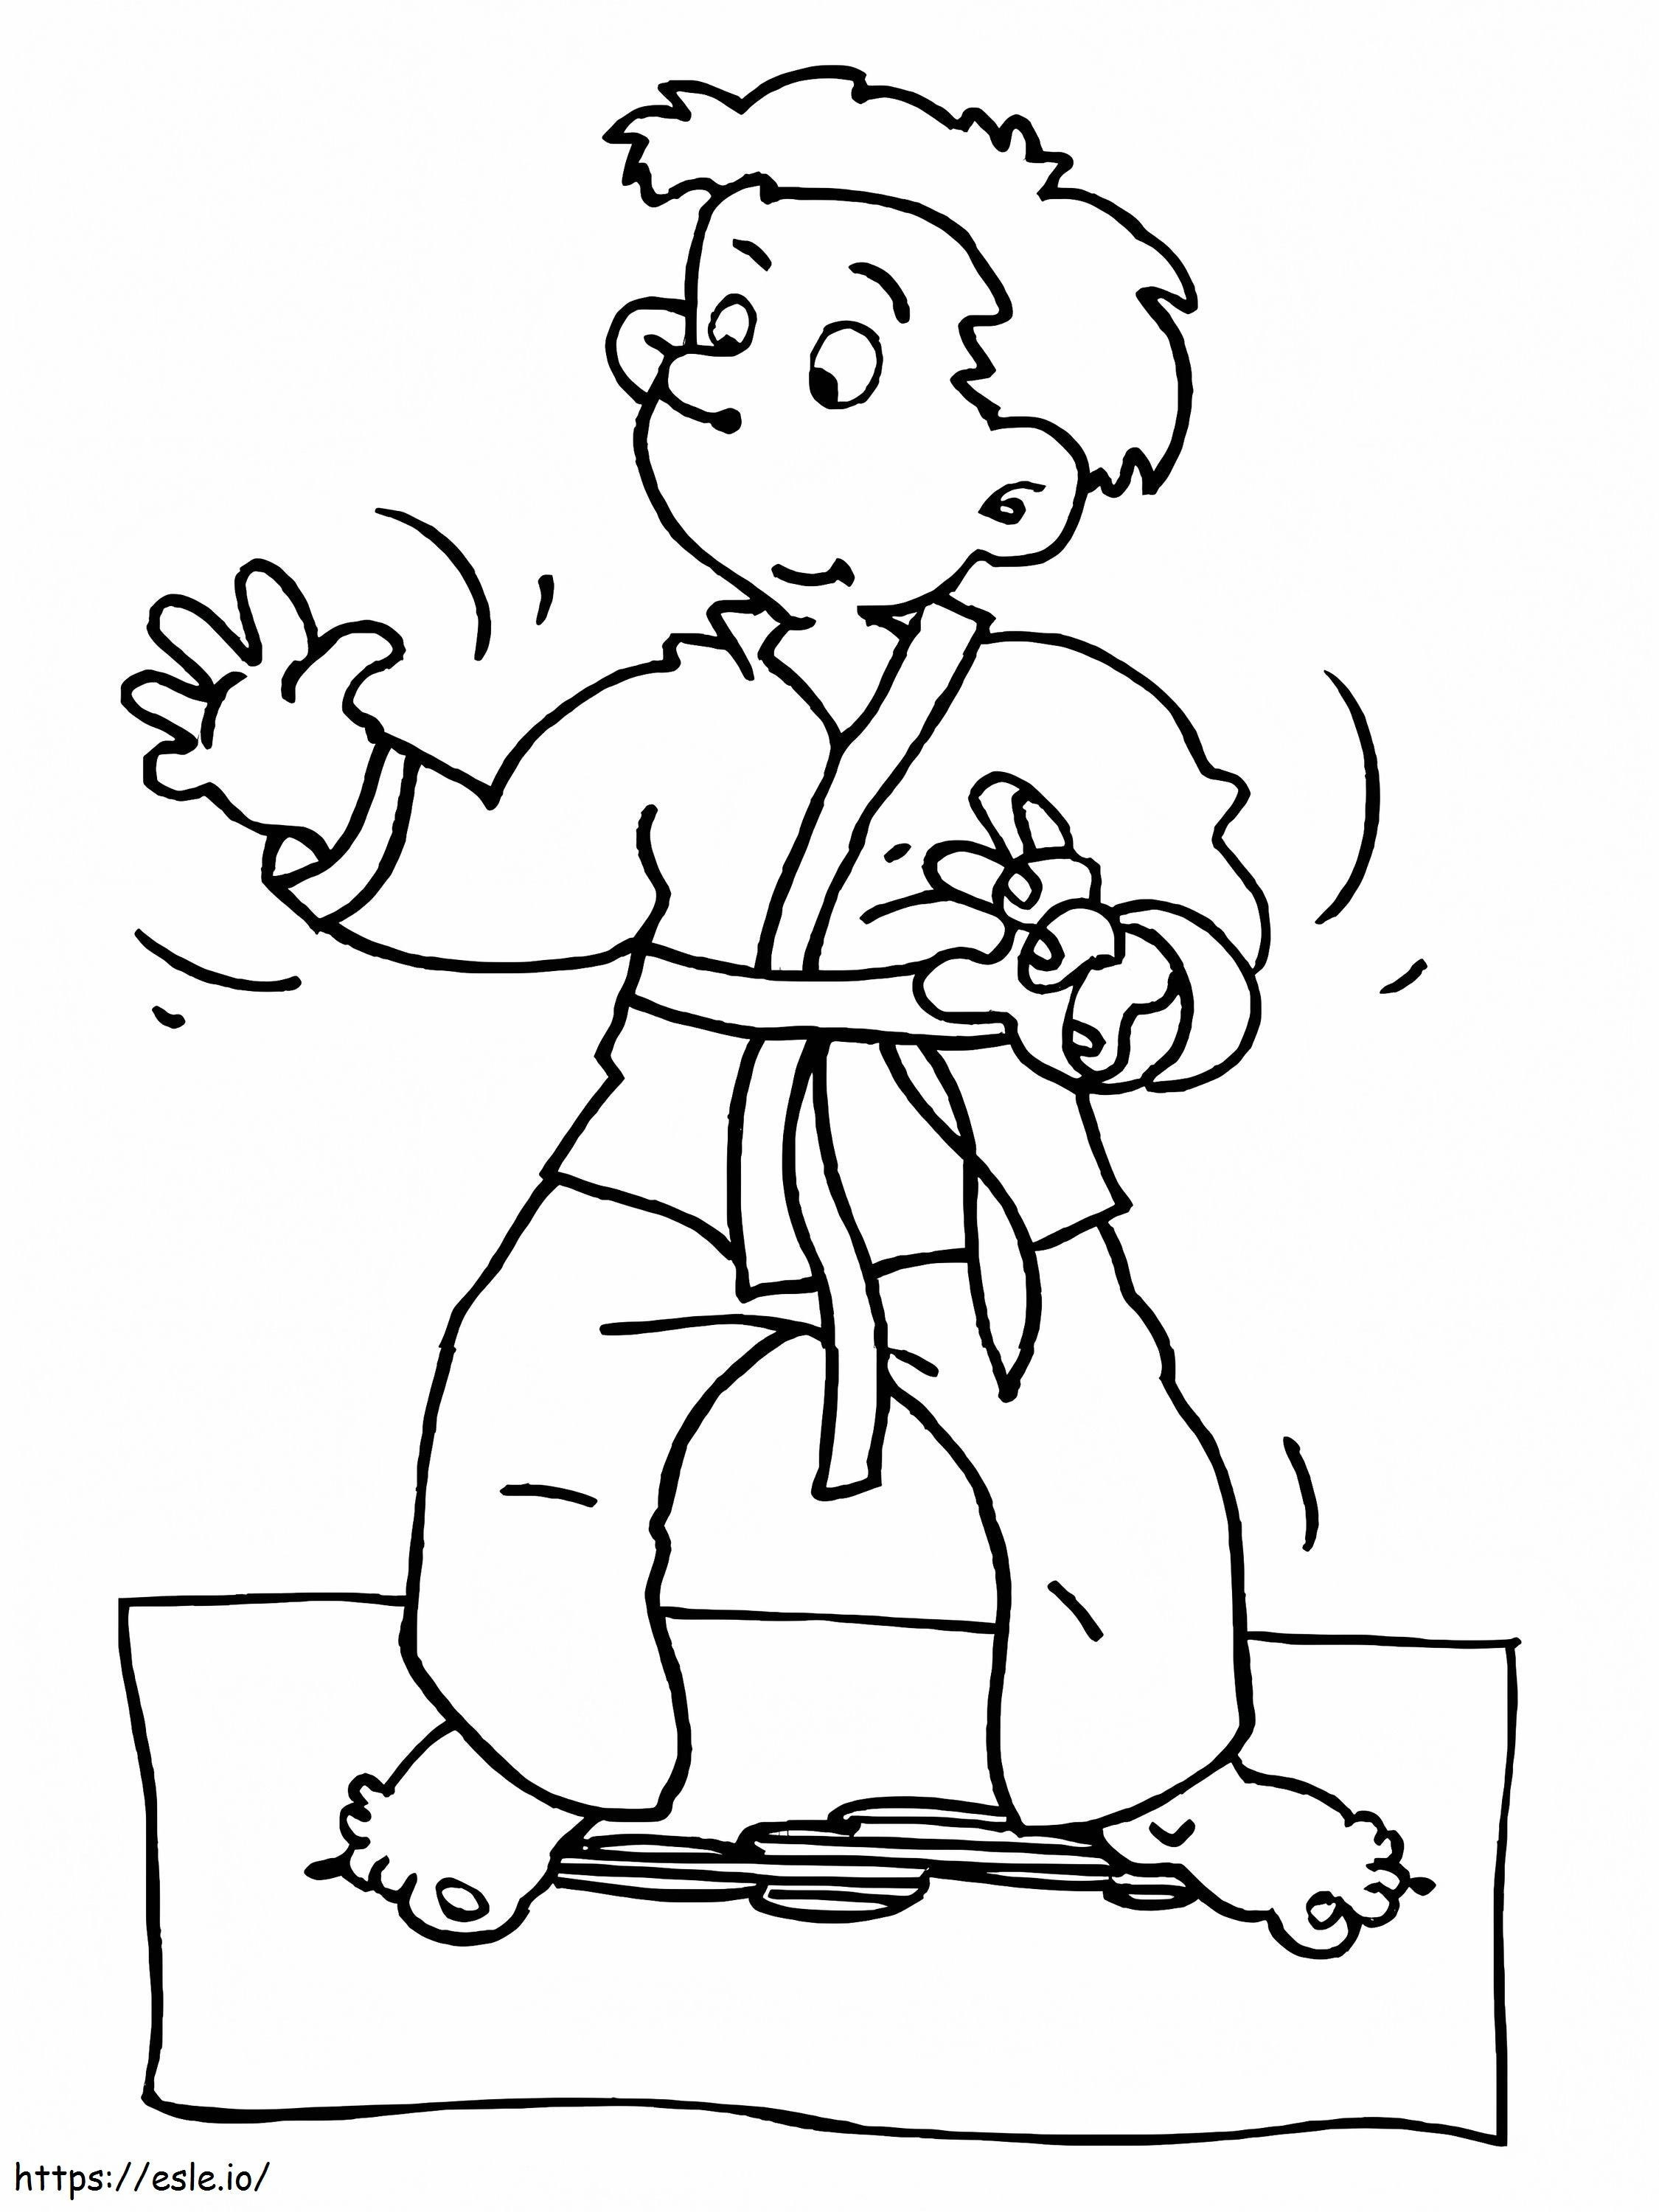 Chłopiec Uczy Karate kolorowanka